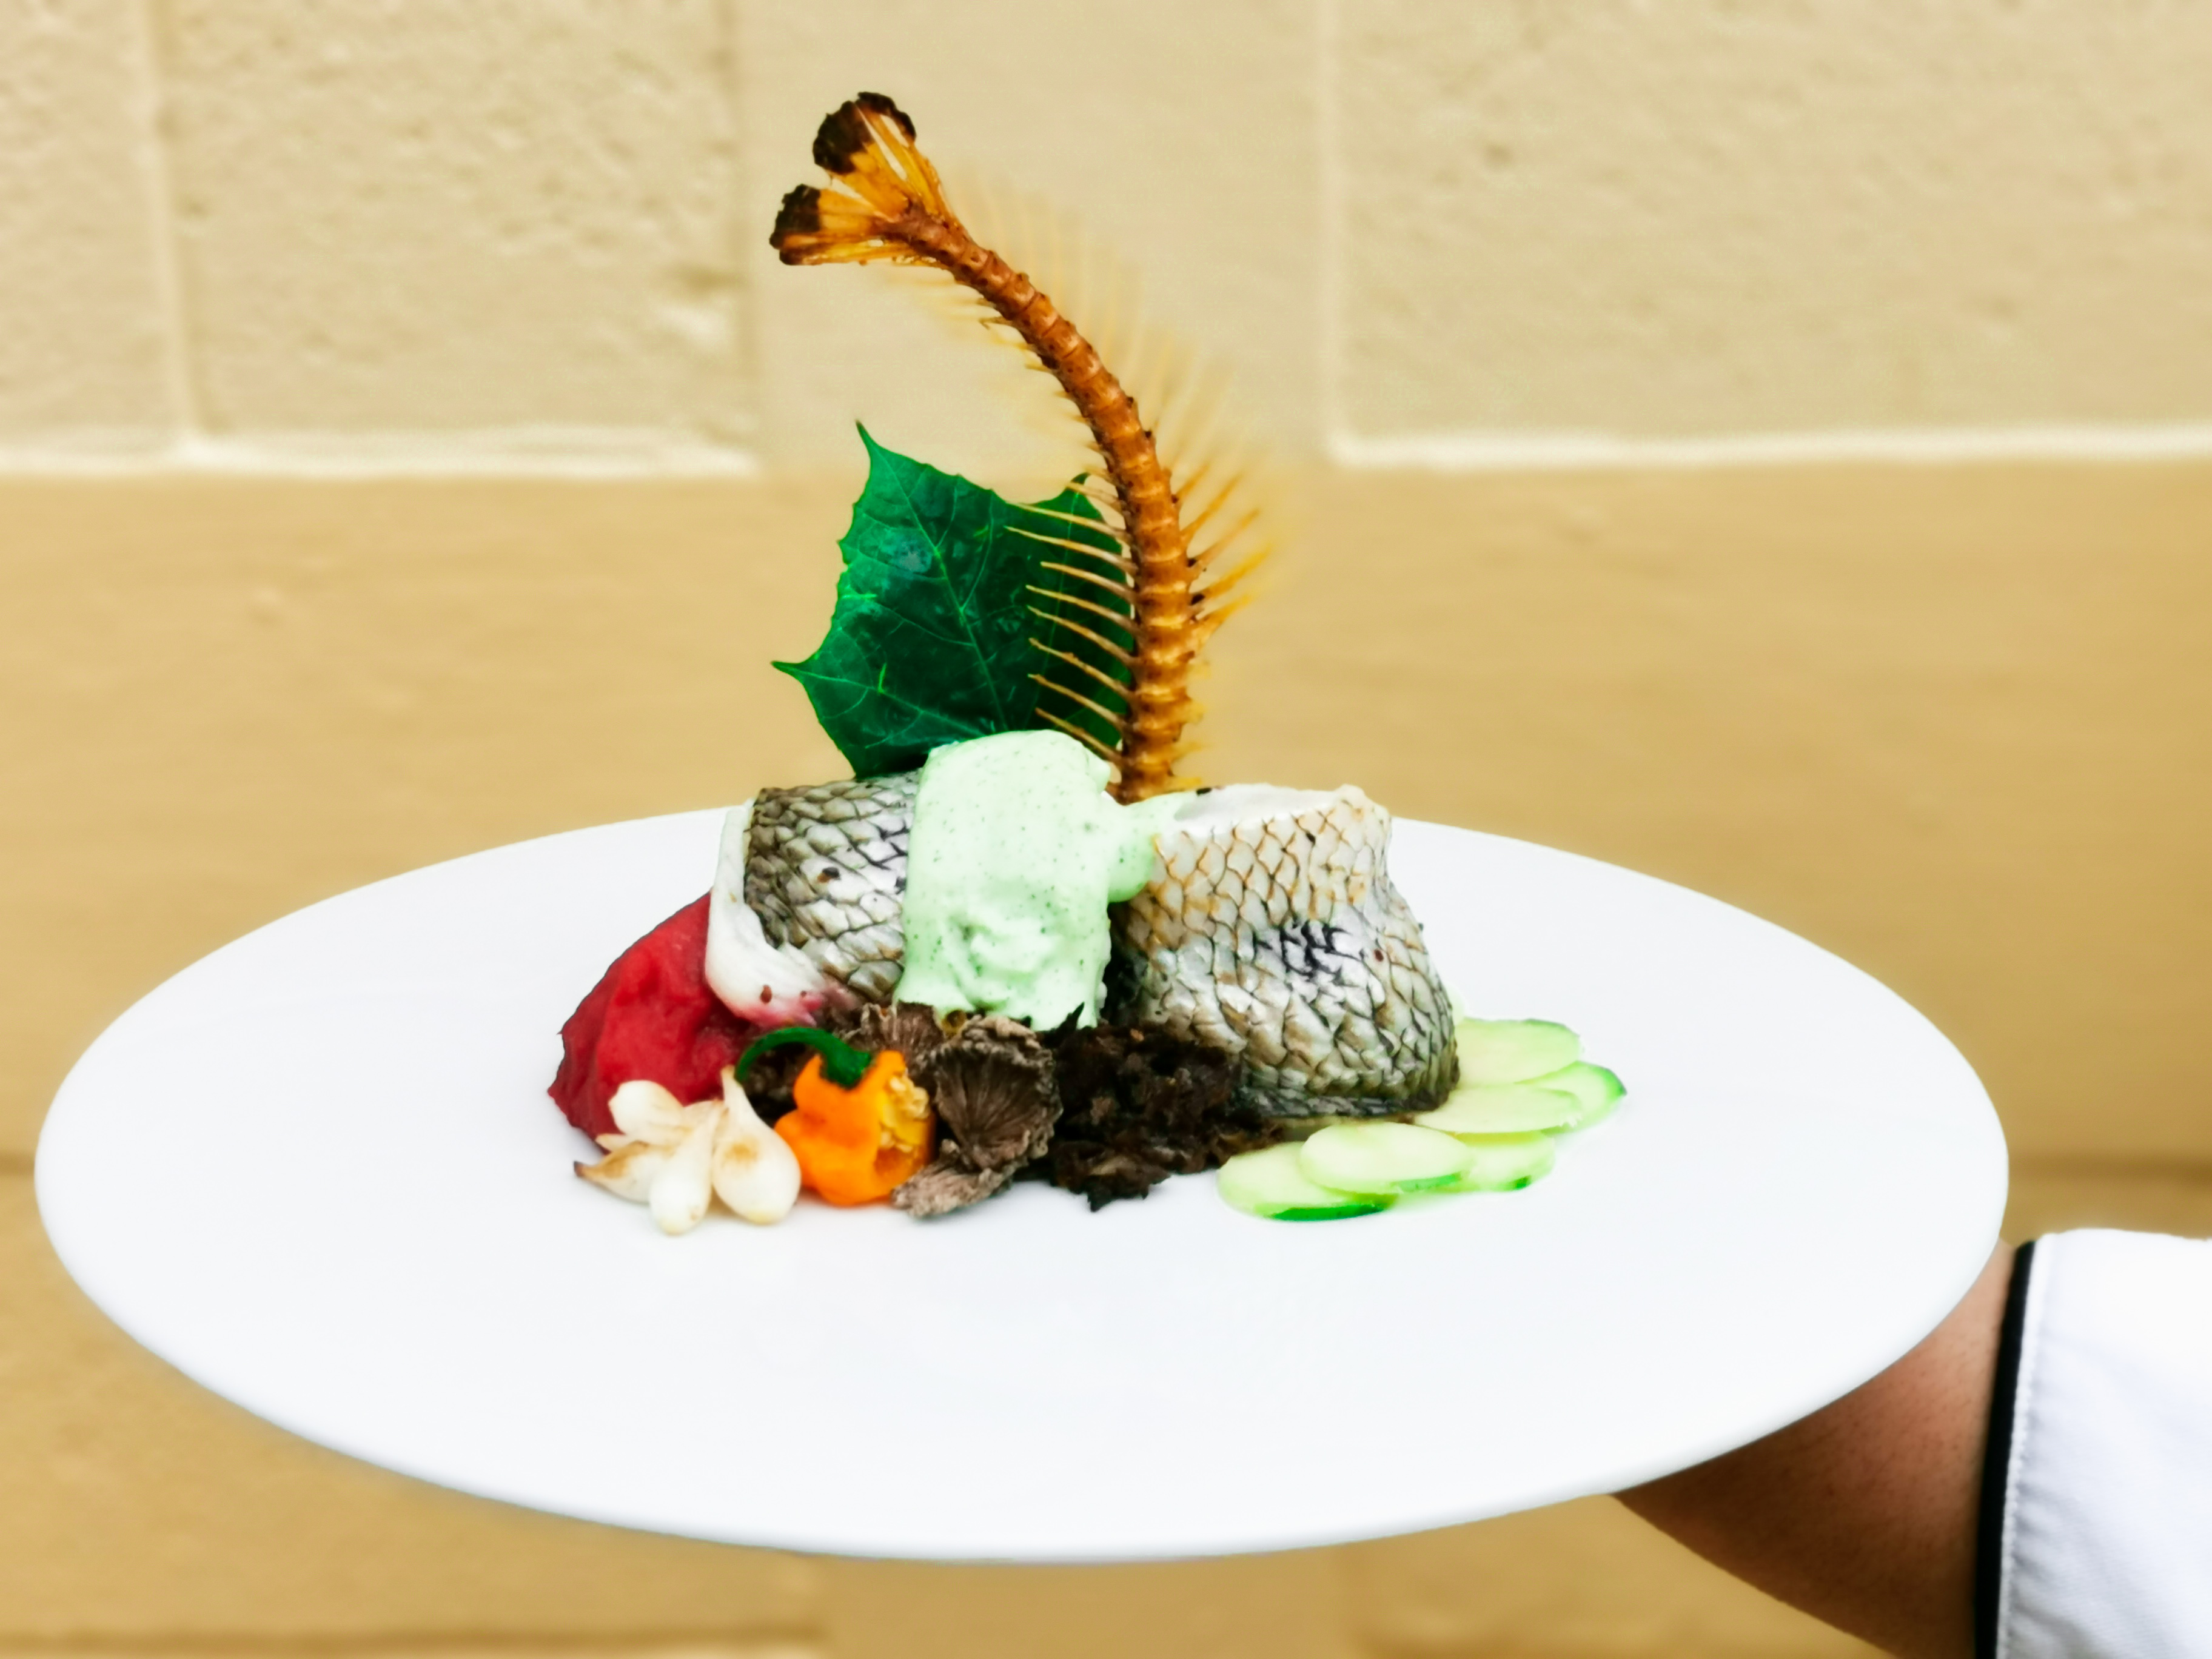 El platillo Sabores de mi Petén, de la chef Vivian Pérez es preparado con pescado blanco, hongo   tzquincheé, hoja de chaya y jocote mico, entre otros. (Foto Prensa Libre, cortesía de Vivian Pérez)